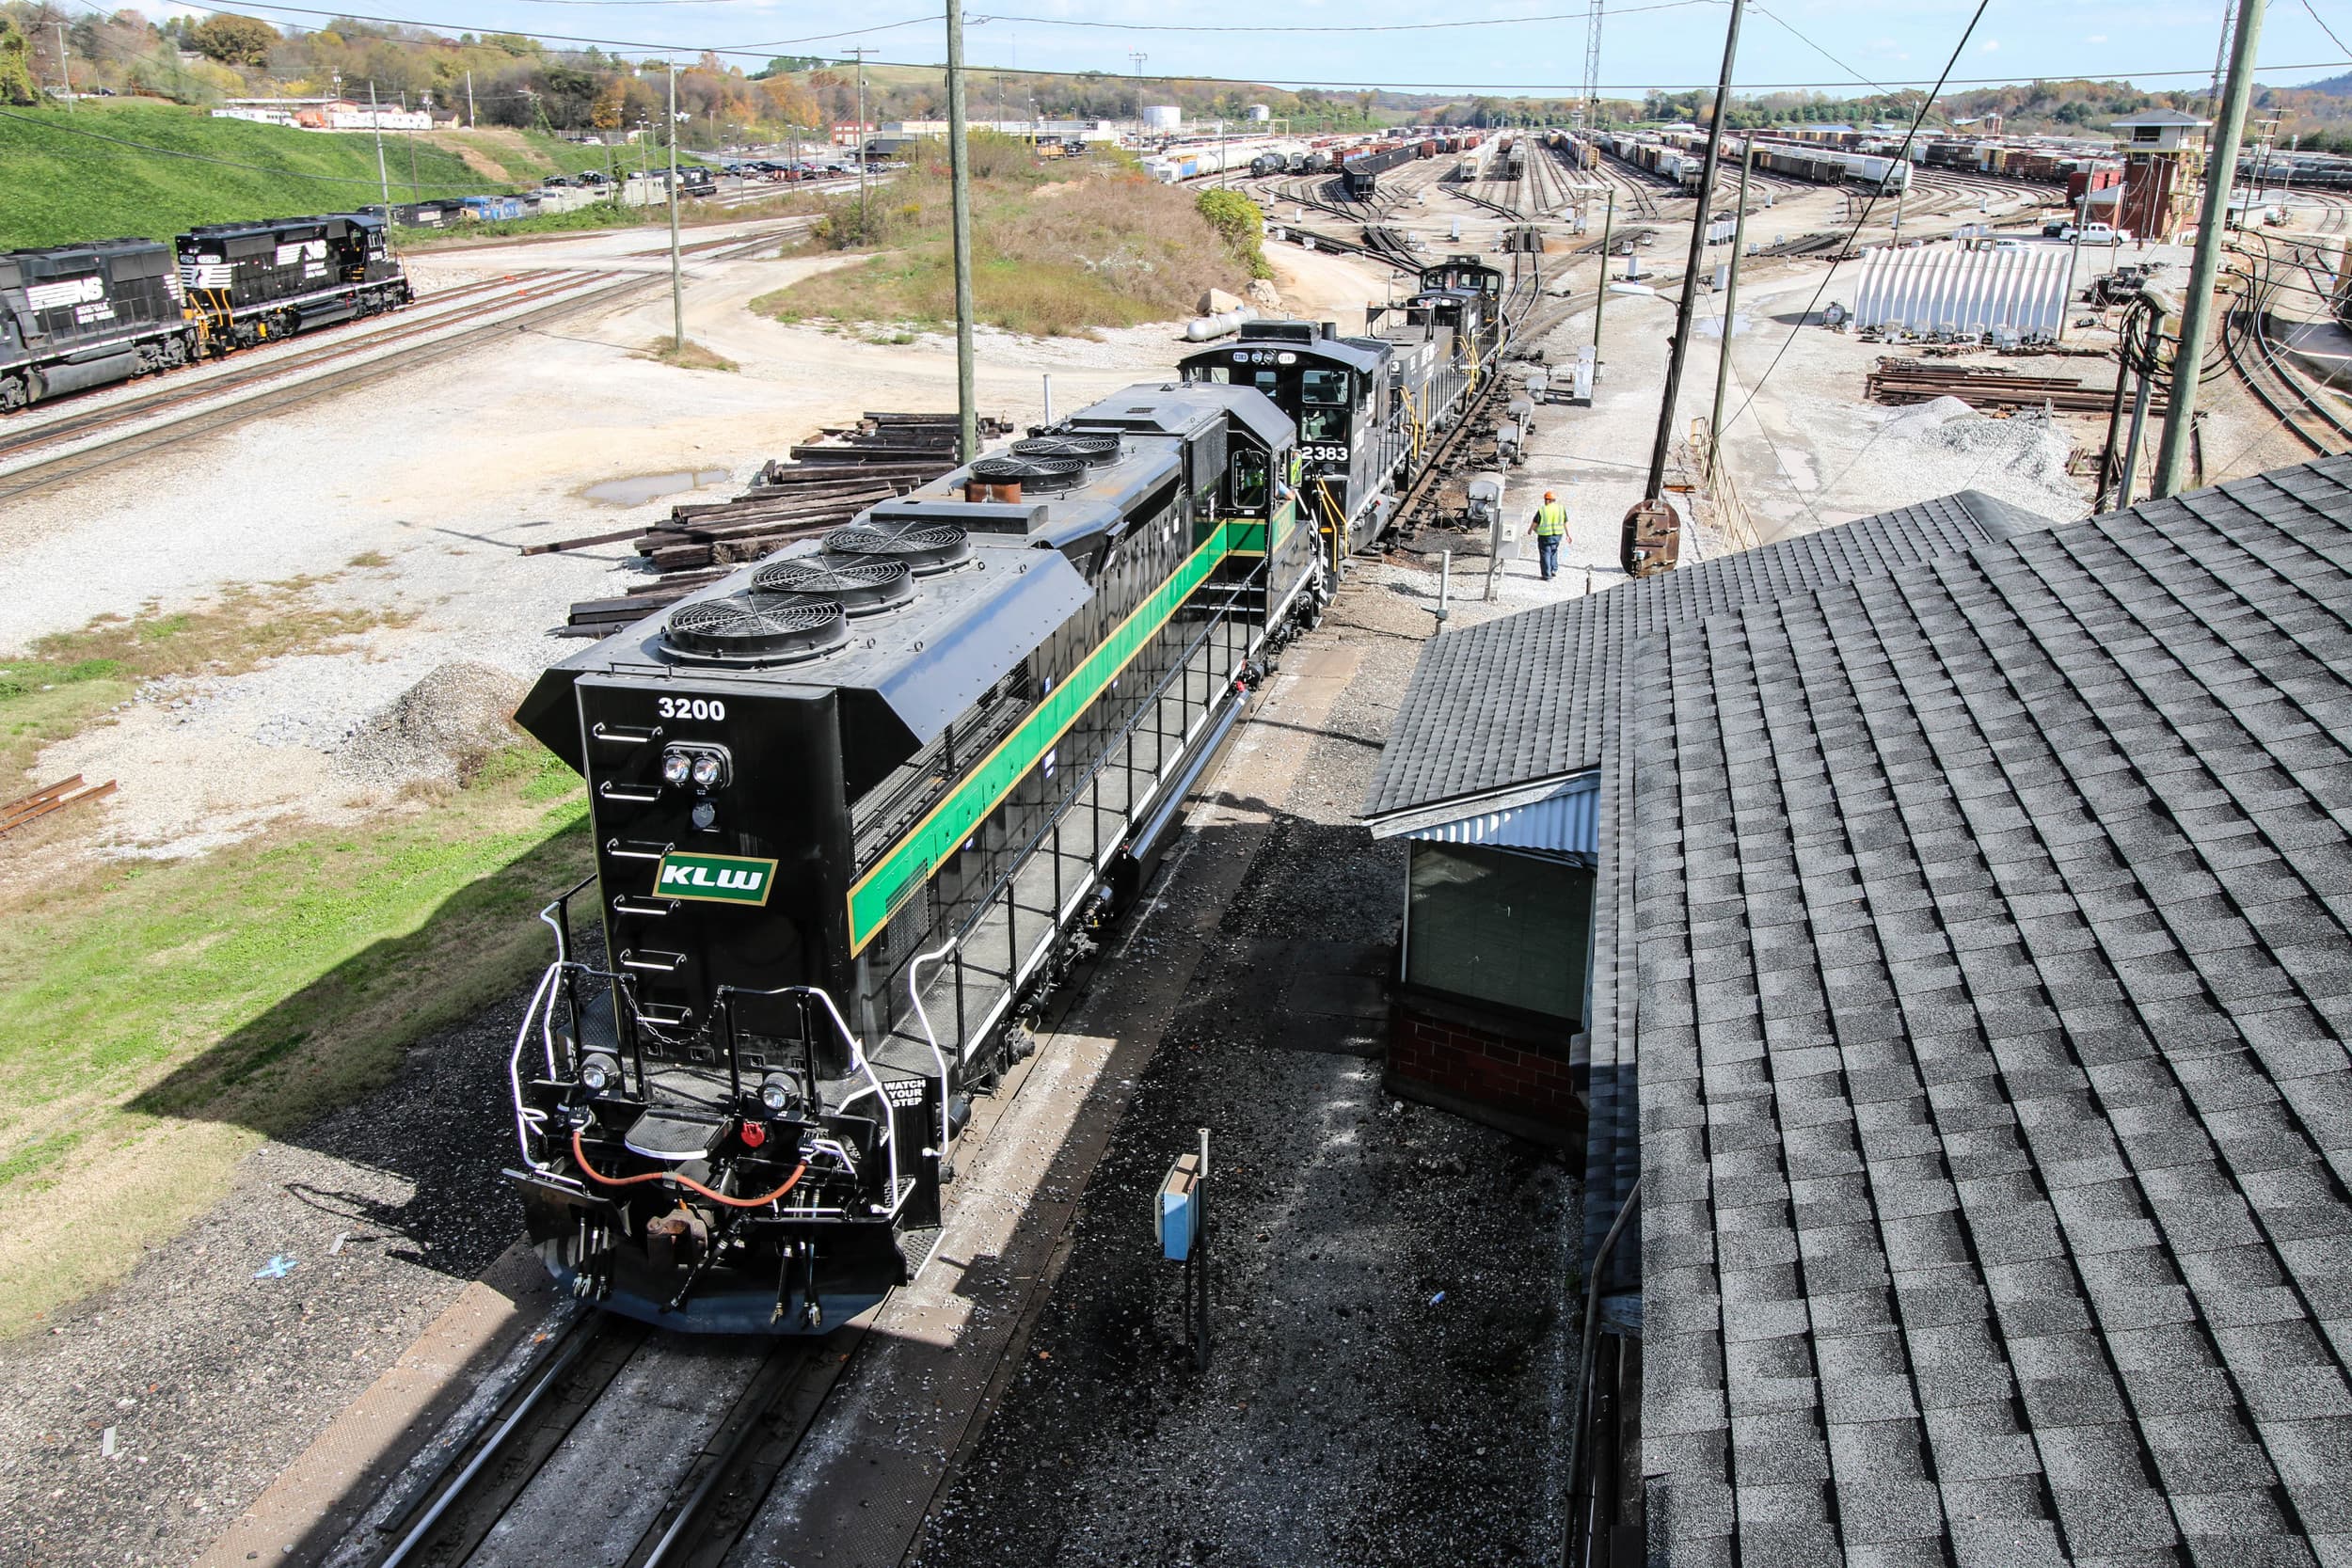 KLWX 3200 in rail yard